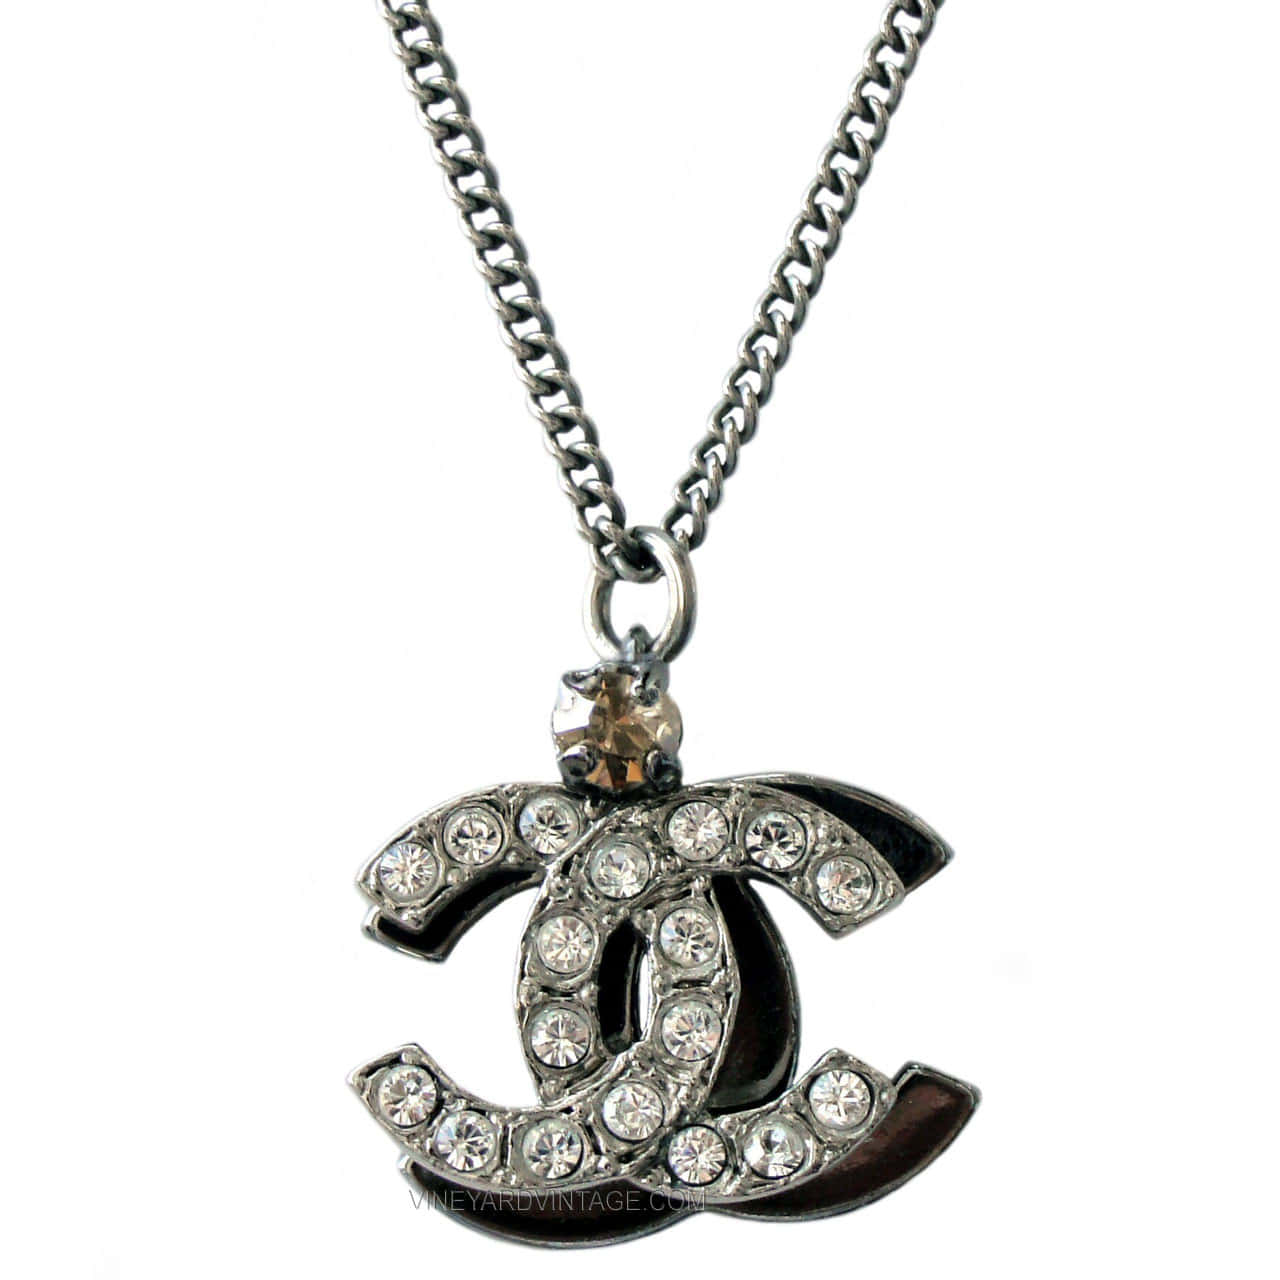 Unavista Dell'iconico Logo Chanel.